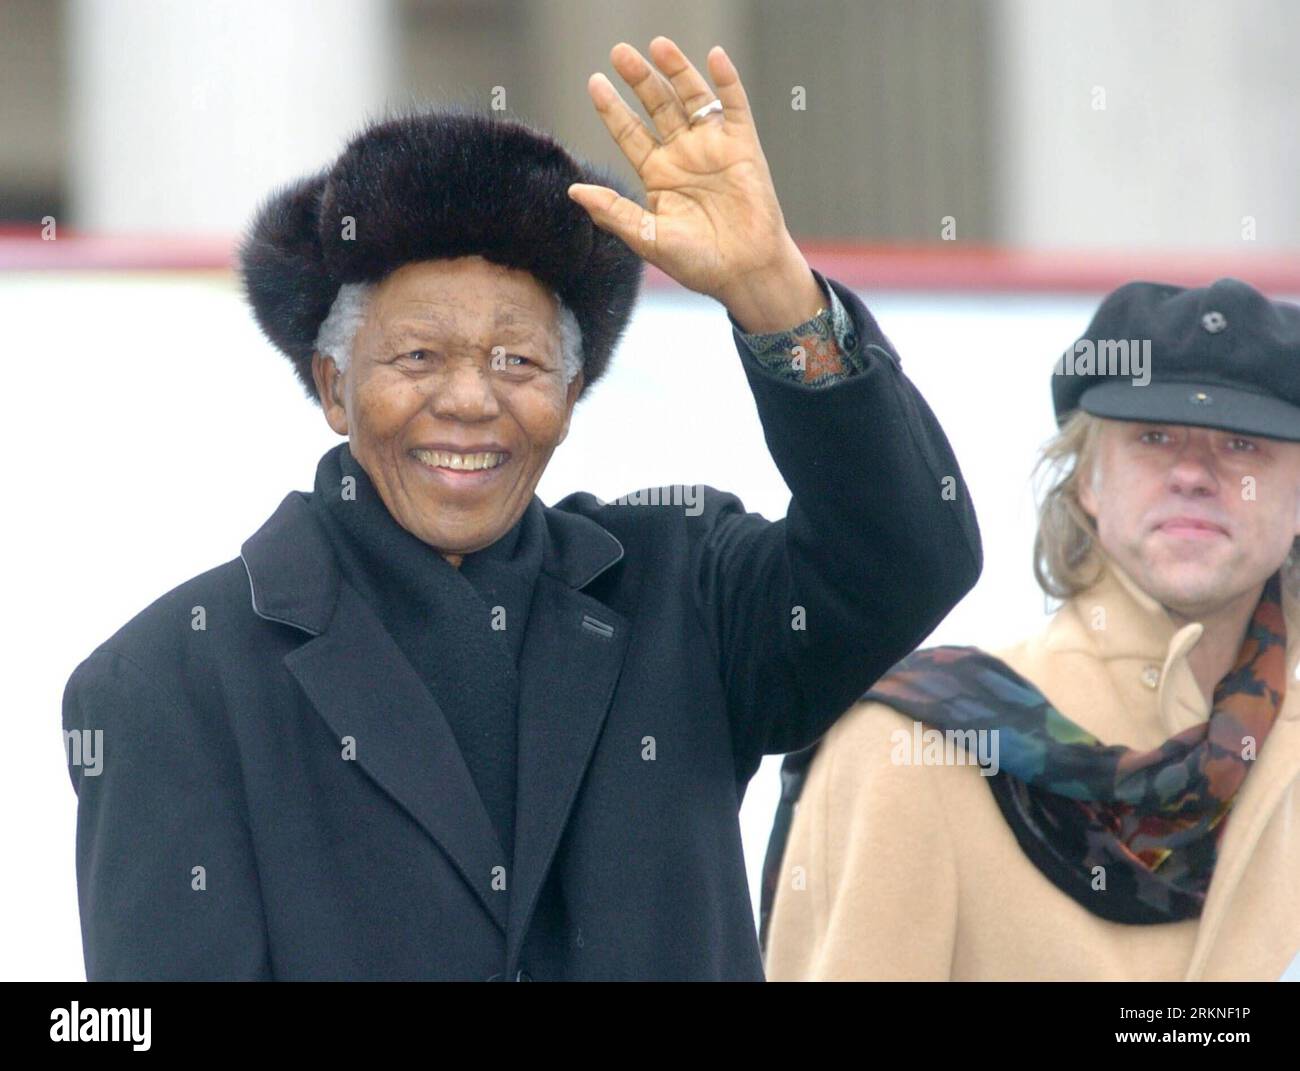 Bildnummer : 57108124 Datum : 25.02.2012 Copyright : imago/Xinhua (120225) -- BEIJING, 25 février 2012 (Xinhua) -- une photo prise le 3 février 2005 montre que l'ancien président sud-africain Nelson Mandela fait signe à l'auditoire de son discours sur Trafagar Square à Londres, en Grande-Bretagne. Nelson Mandela a été admis à l’hôpital, a annoncé la présidence sud-africaine le 25 février 2012. La présidence a déclaré dans une déclaration que les médecins conseillaient une attention médicale spécialisée appropriée en raison de sa plainte abdominale de longue date. (Xinhua/Cheng min) (lr) AFRIQUE DU SUD-NELSON MANDELA-PLAINTE ABDOMINALE P Banque D'Images